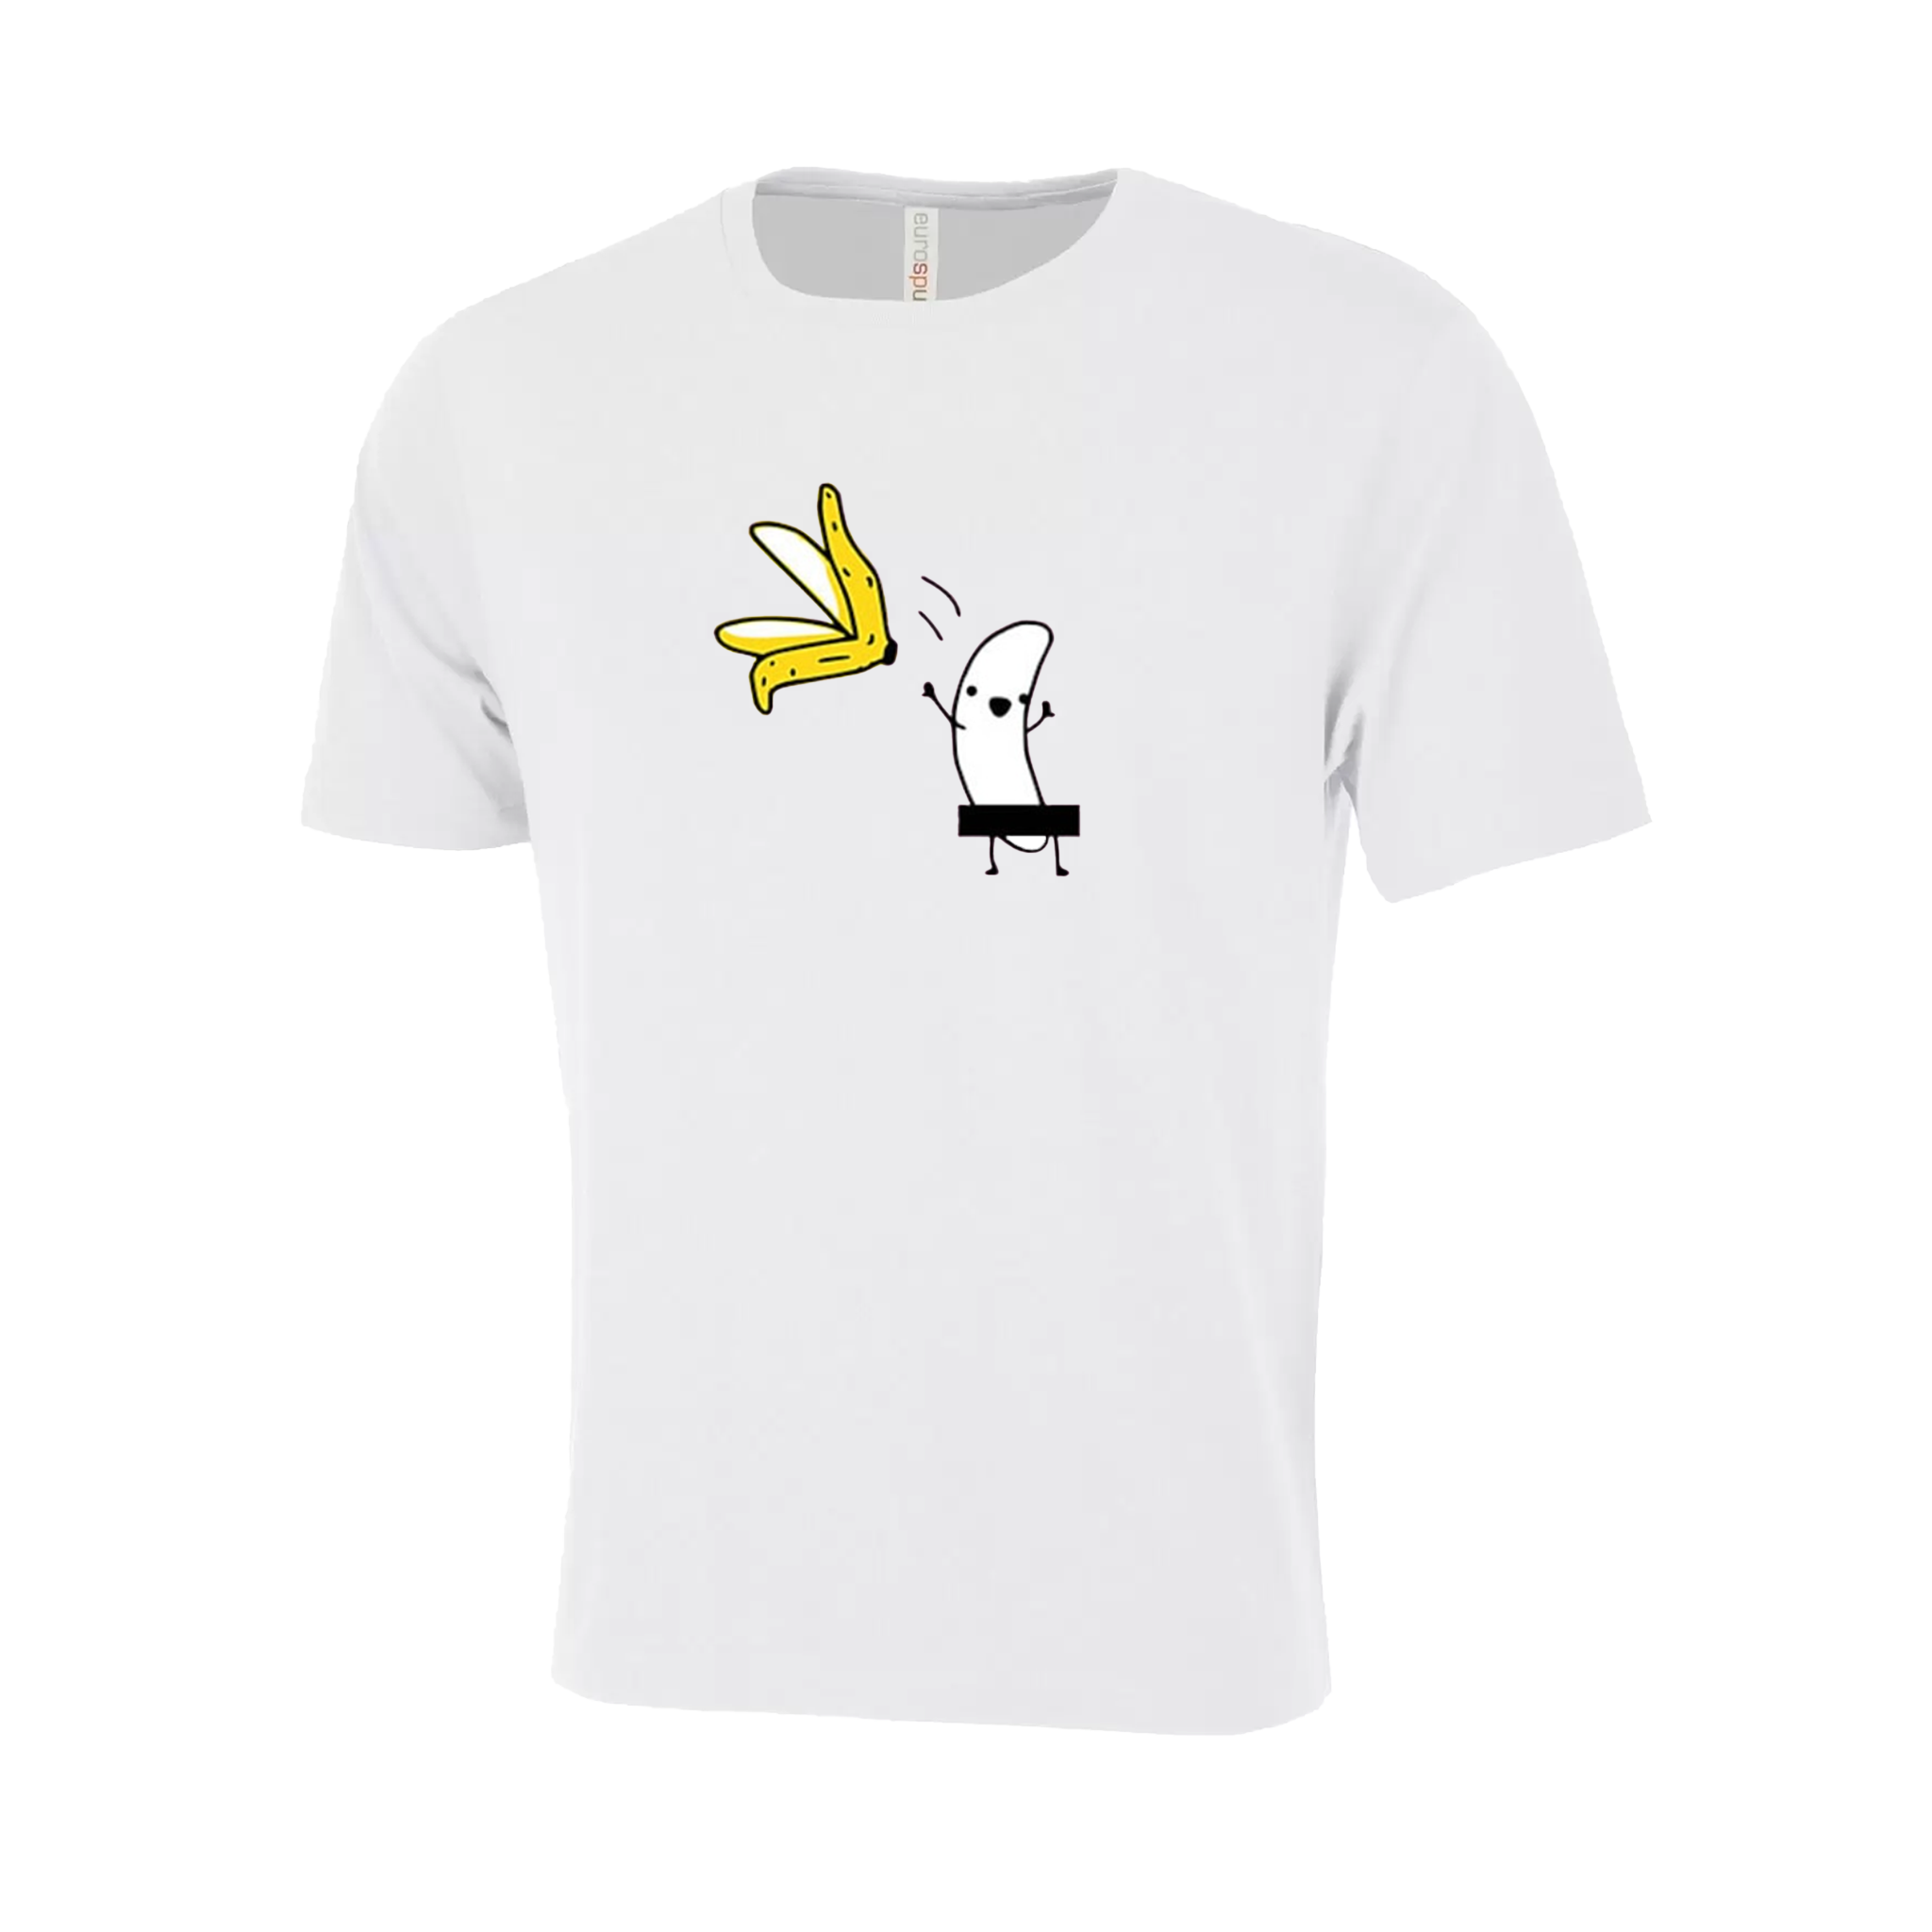 Stripped Banana Novelty T-Shirt - Adult Unisex Sizing XS-4XL - White